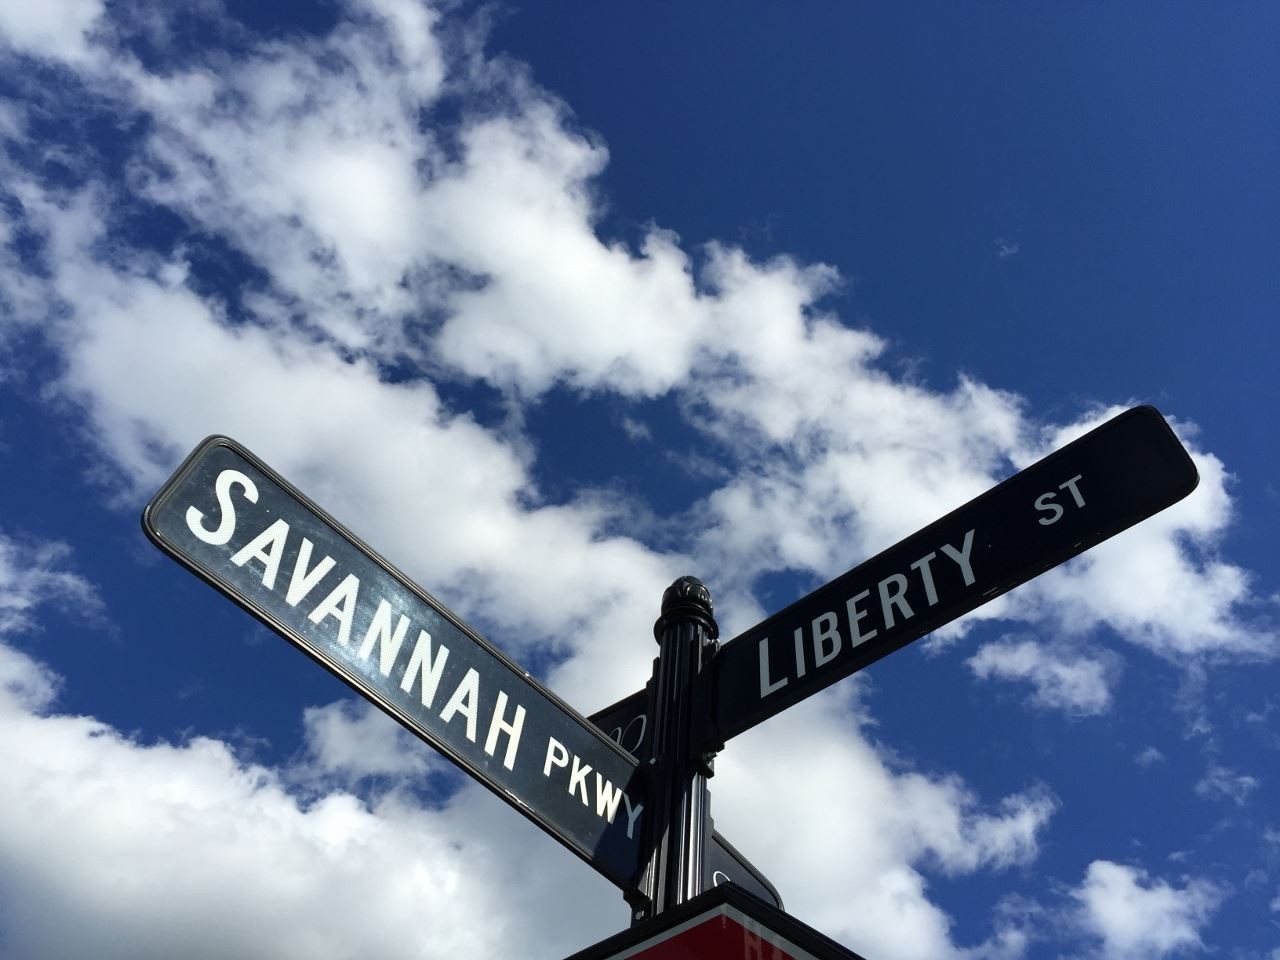 22. 156 Savannah Parkway